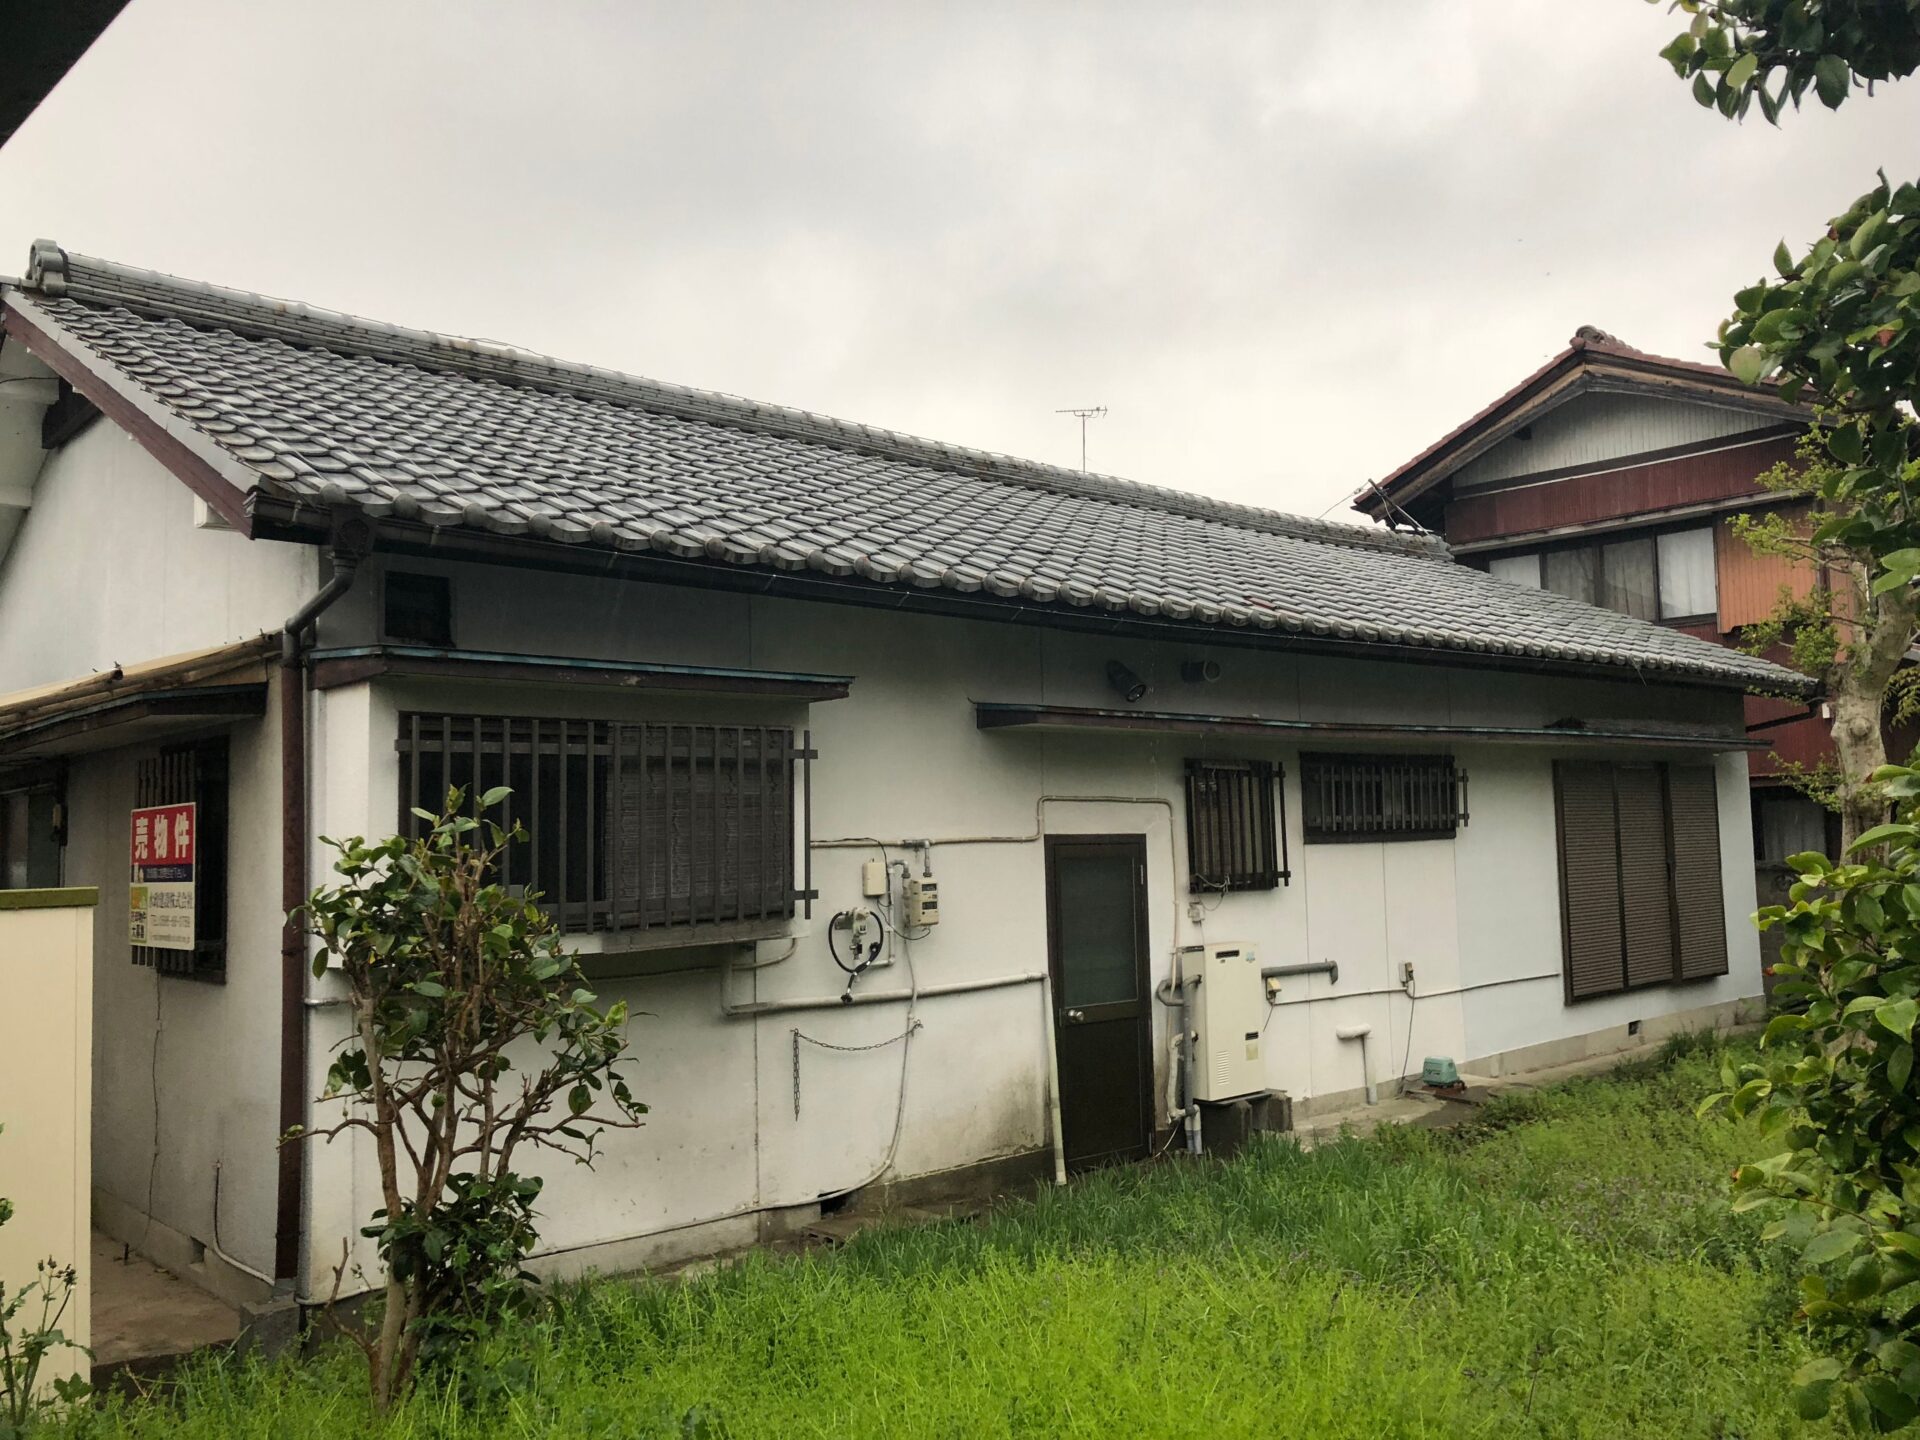 空き家管理物件の再生事例 | 愛知県・岐阜県・三重県で空き家管理・活用ならヤモタス